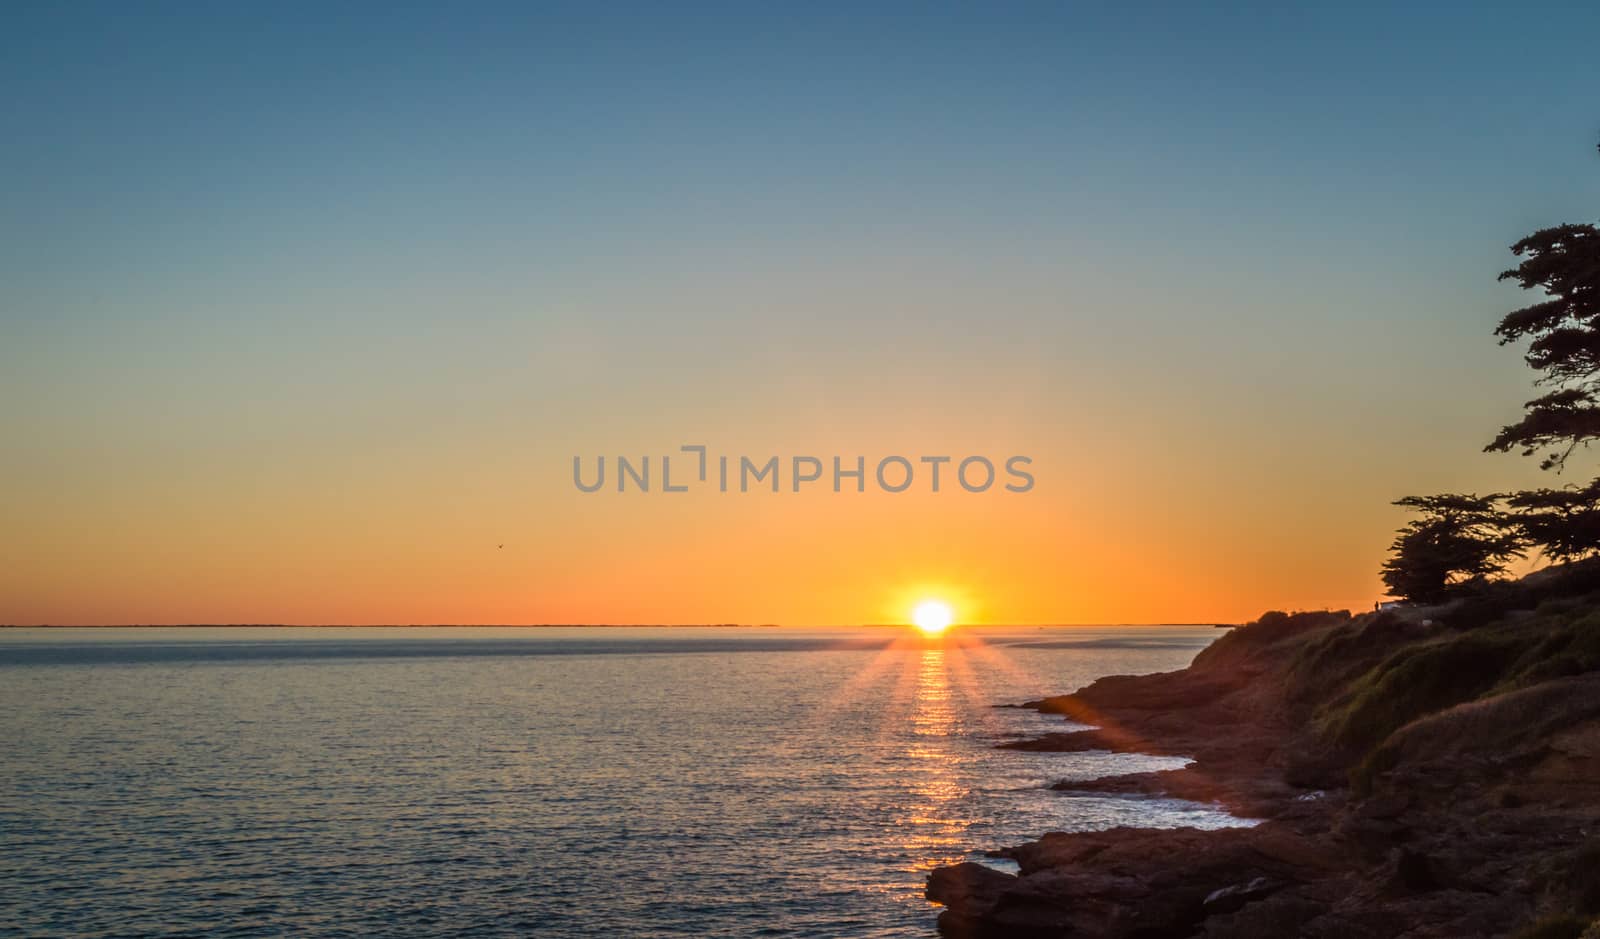 Sunset against the backdrop of the Atlantic Ocean by okskukuruza